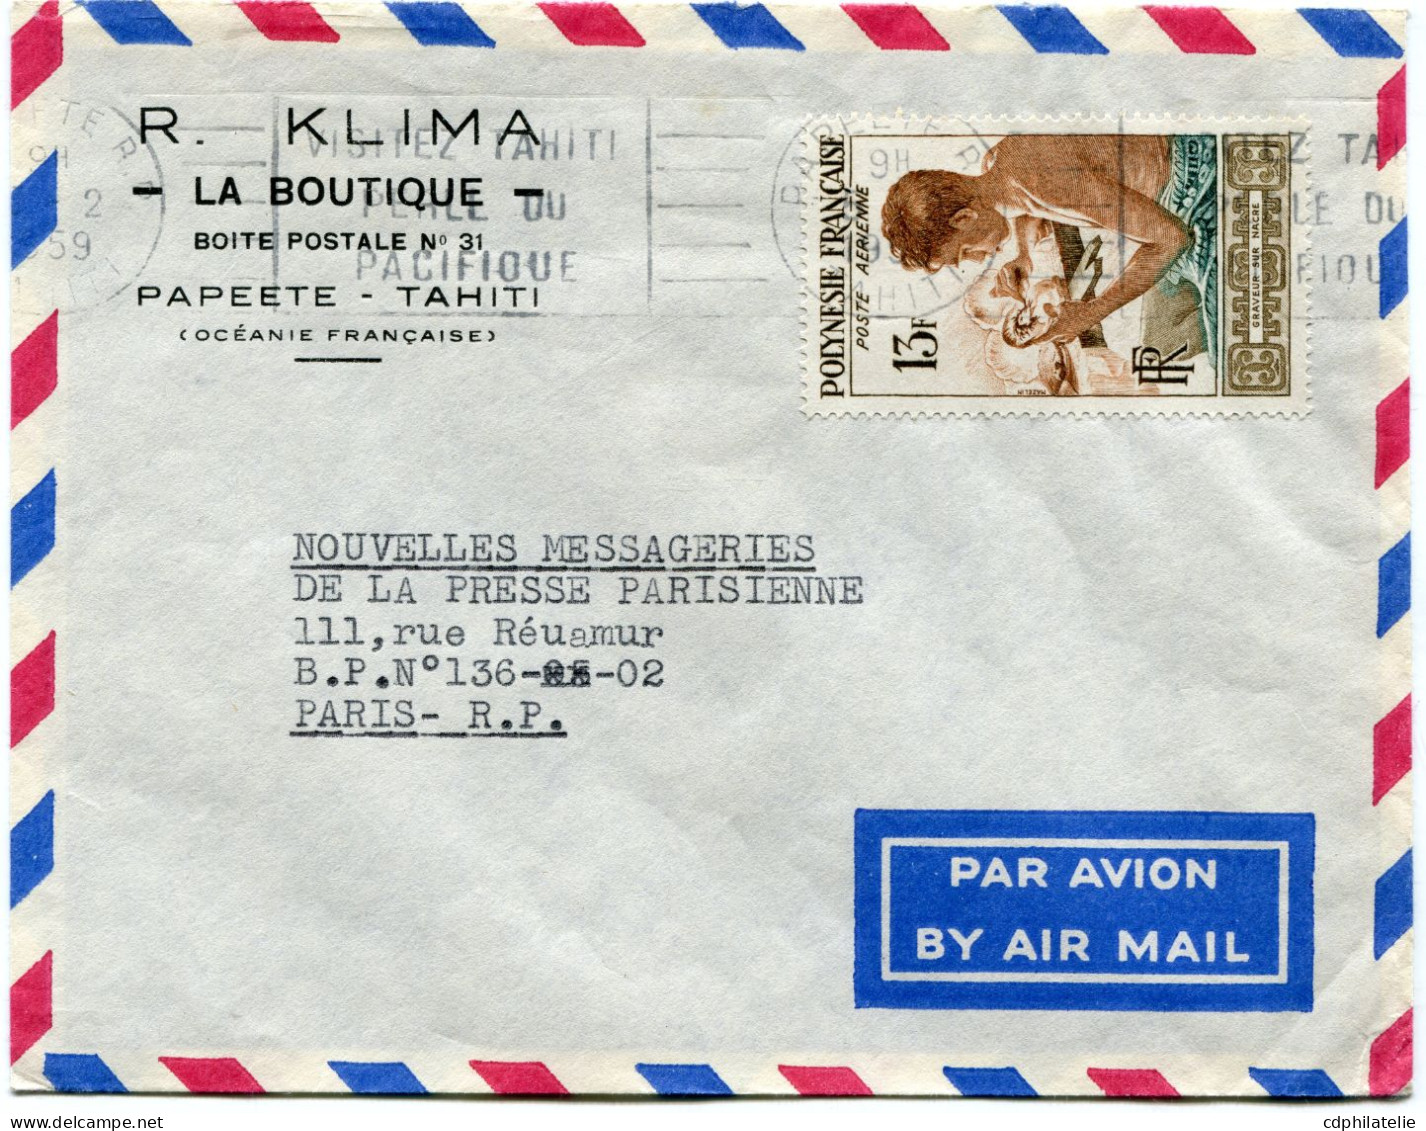 POLYNESIE FRANCAISE LETTRE PAR AVION DEPART PAPEETE 5-2-1959 POUR LA FRANCE - Covers & Documents